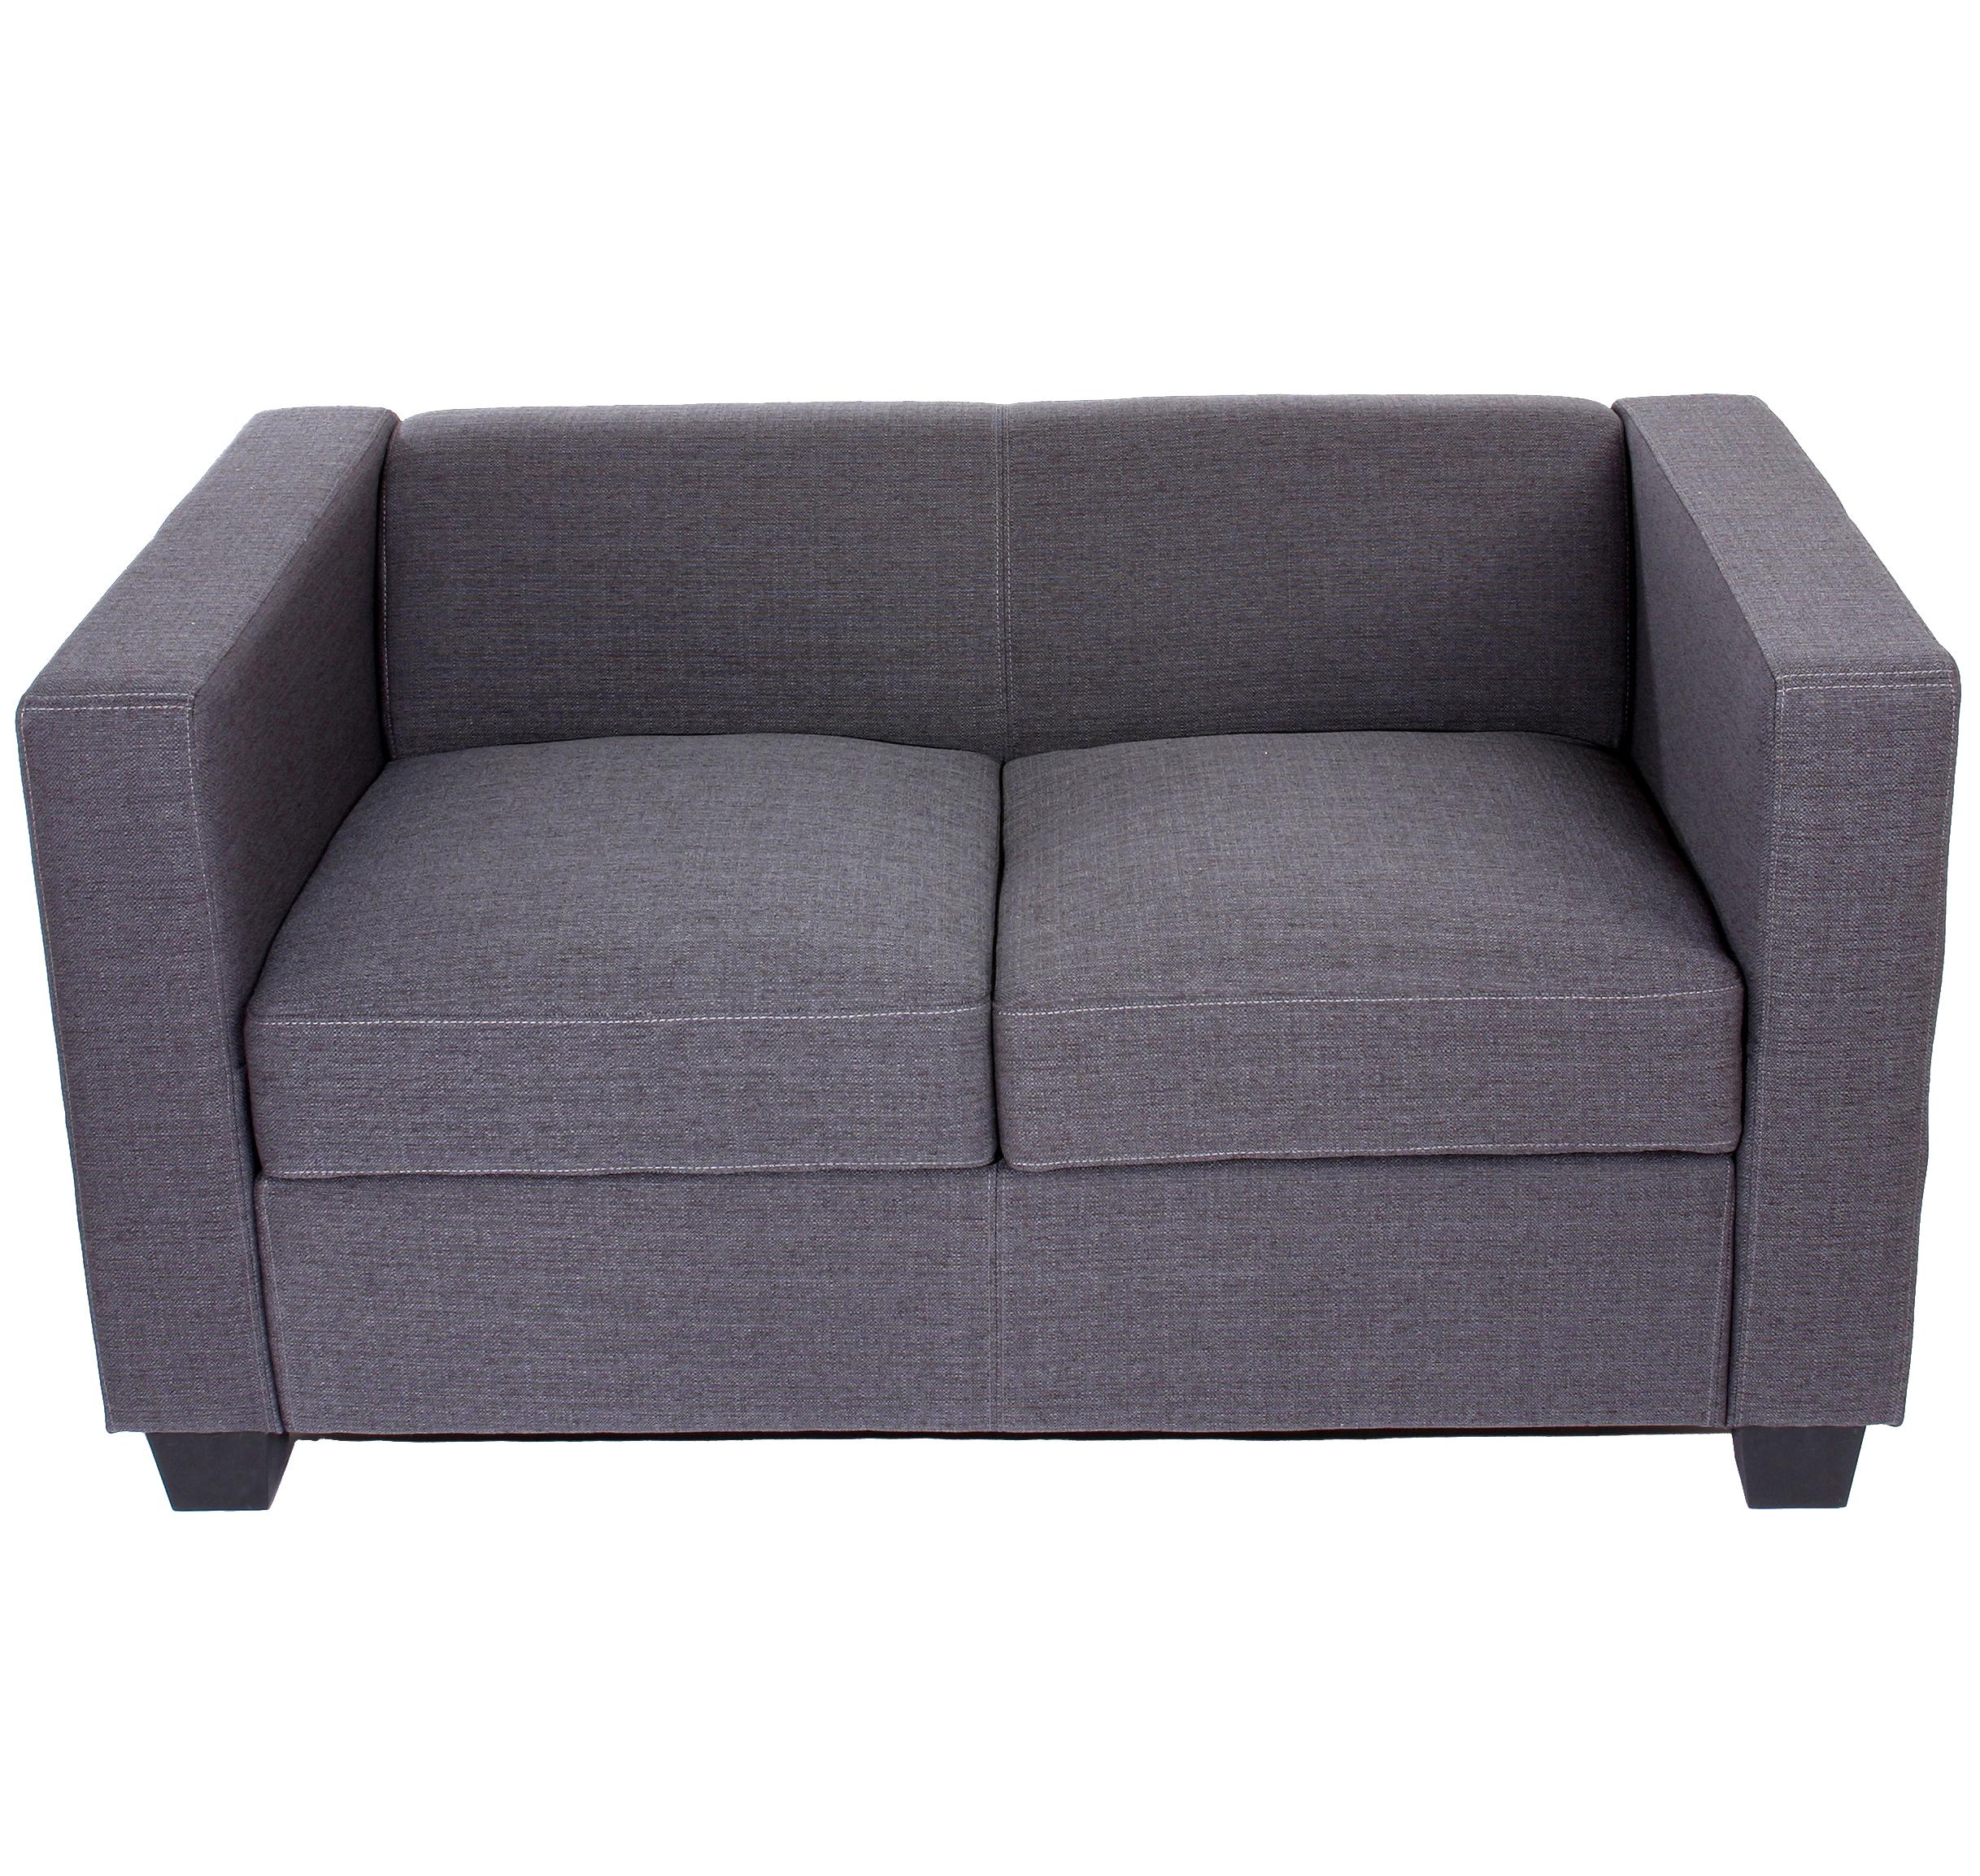 Sofá de 2 plazas BASILIO, Diseño Elegante, Gran Confort, en Tela, Color Gris